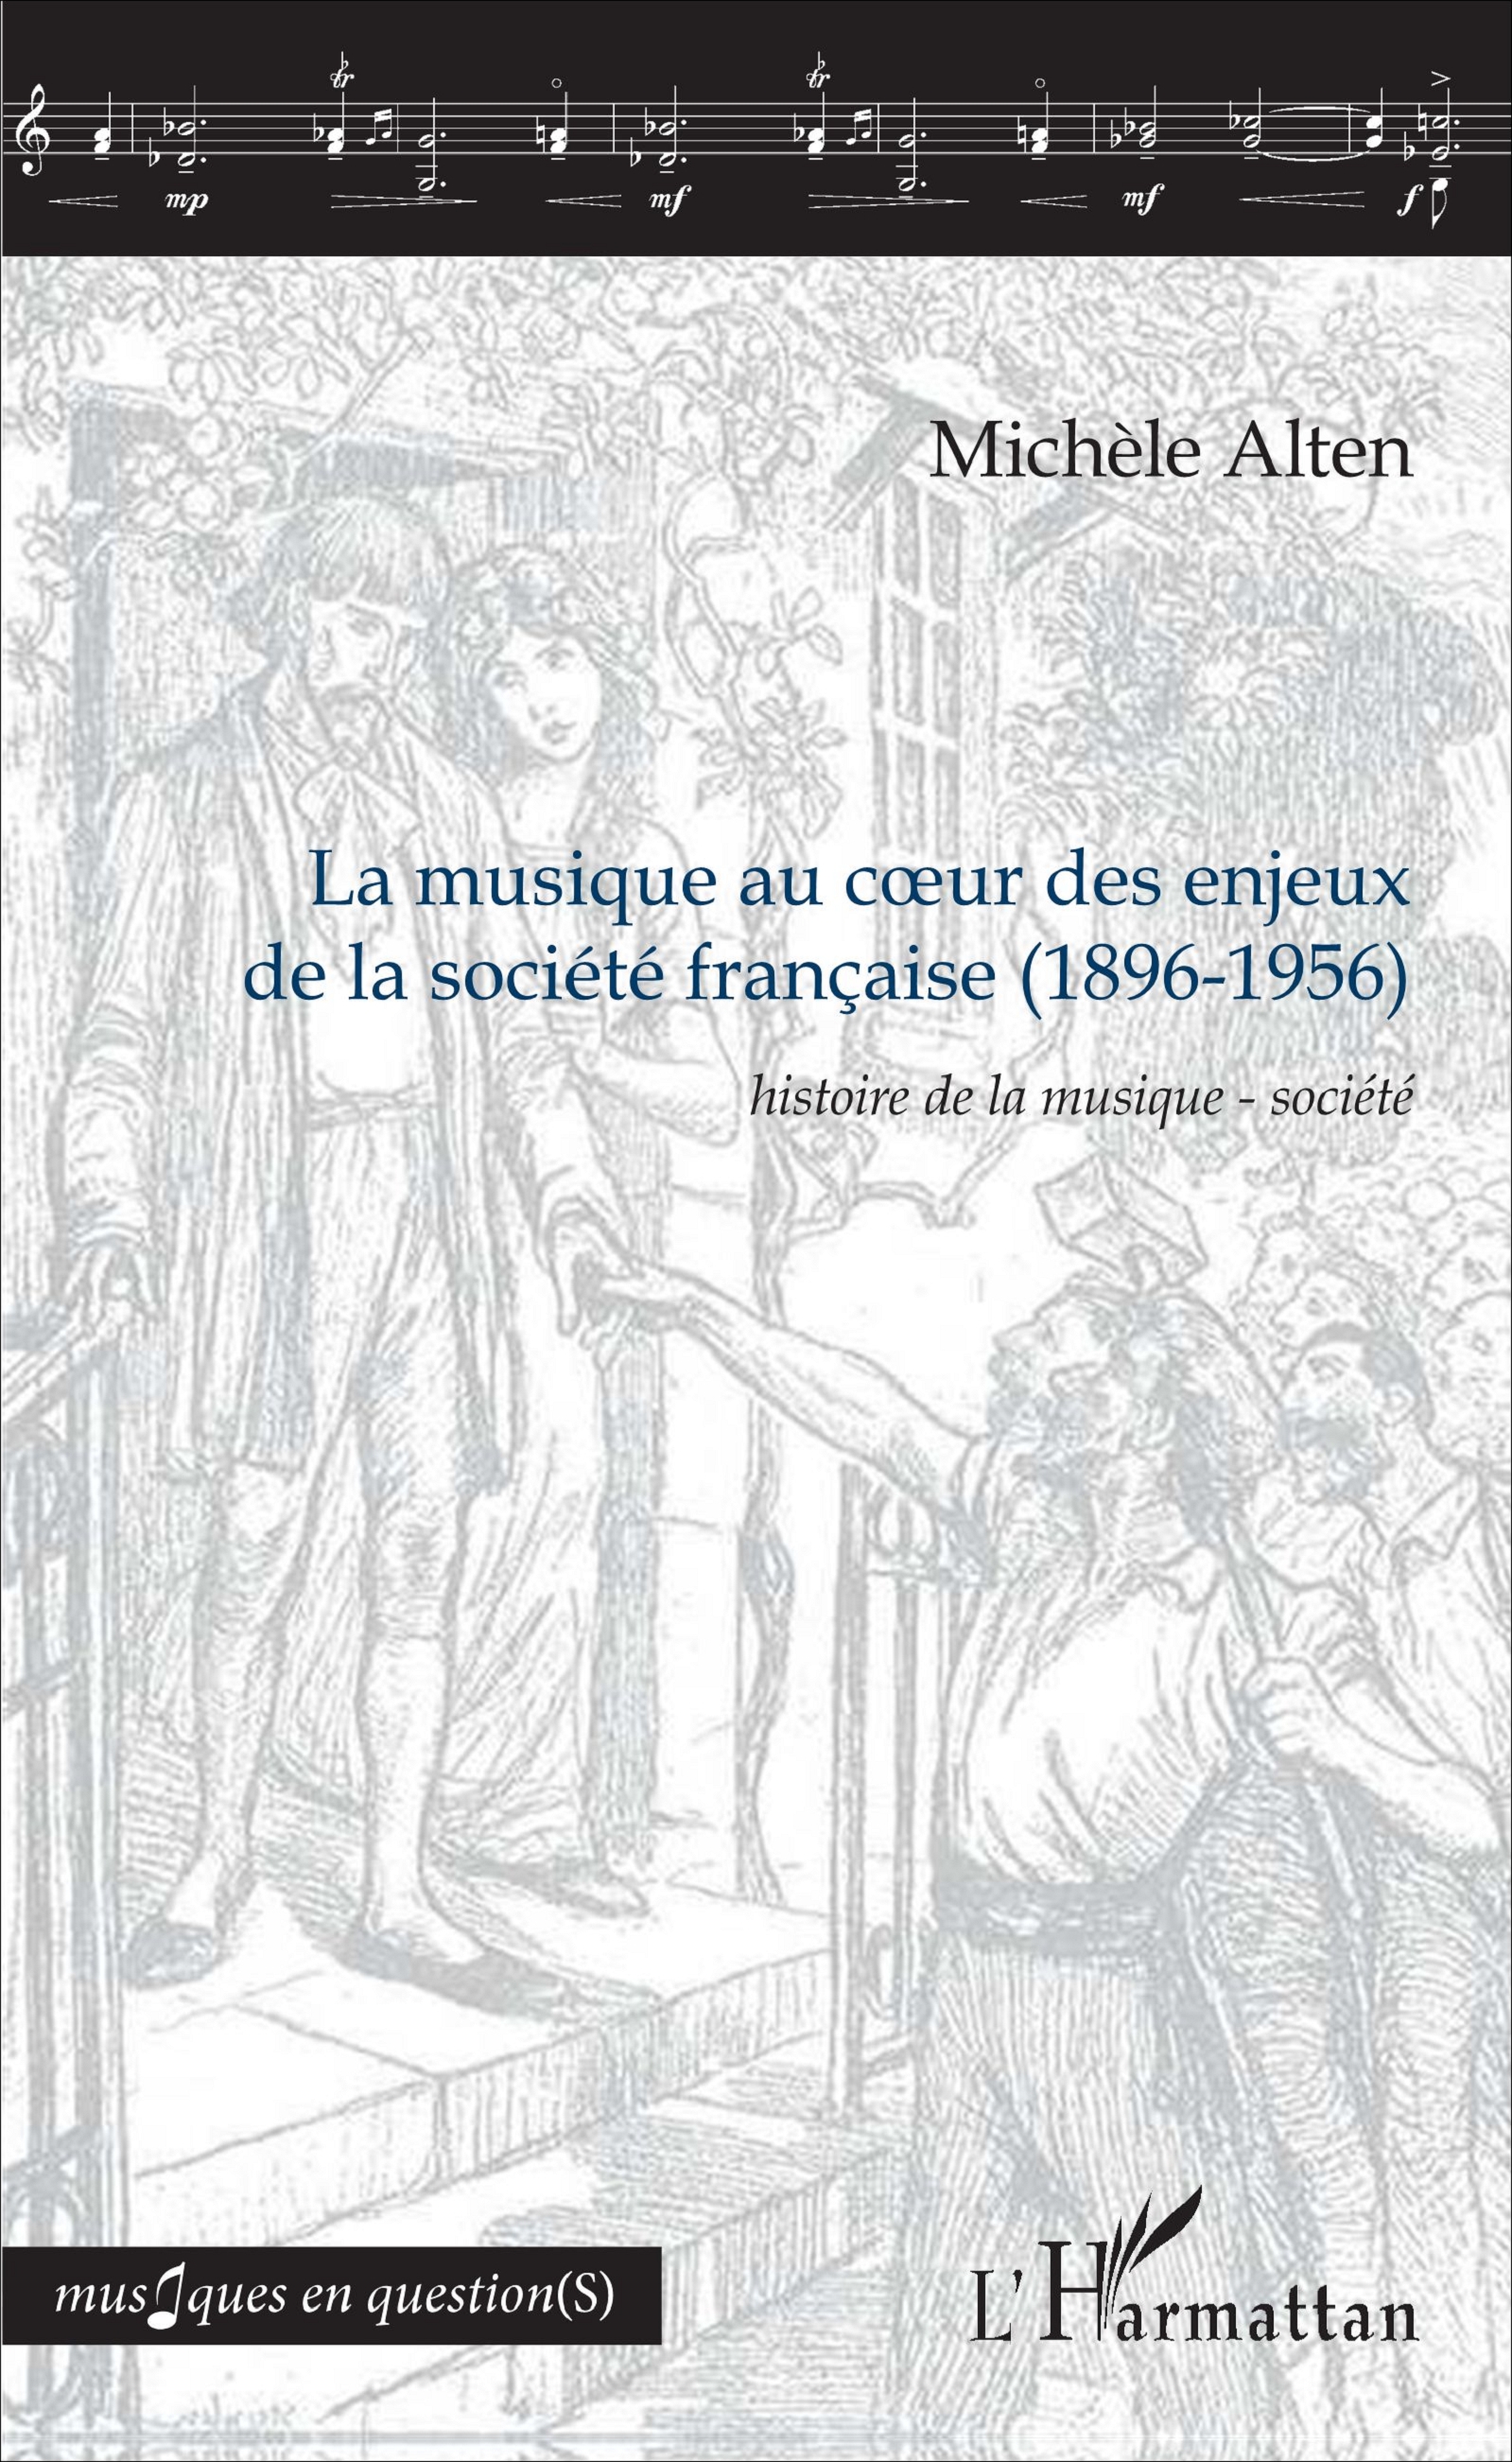 La musique au cœur des enjeux de la société française, 1896-1956 (publication récente)